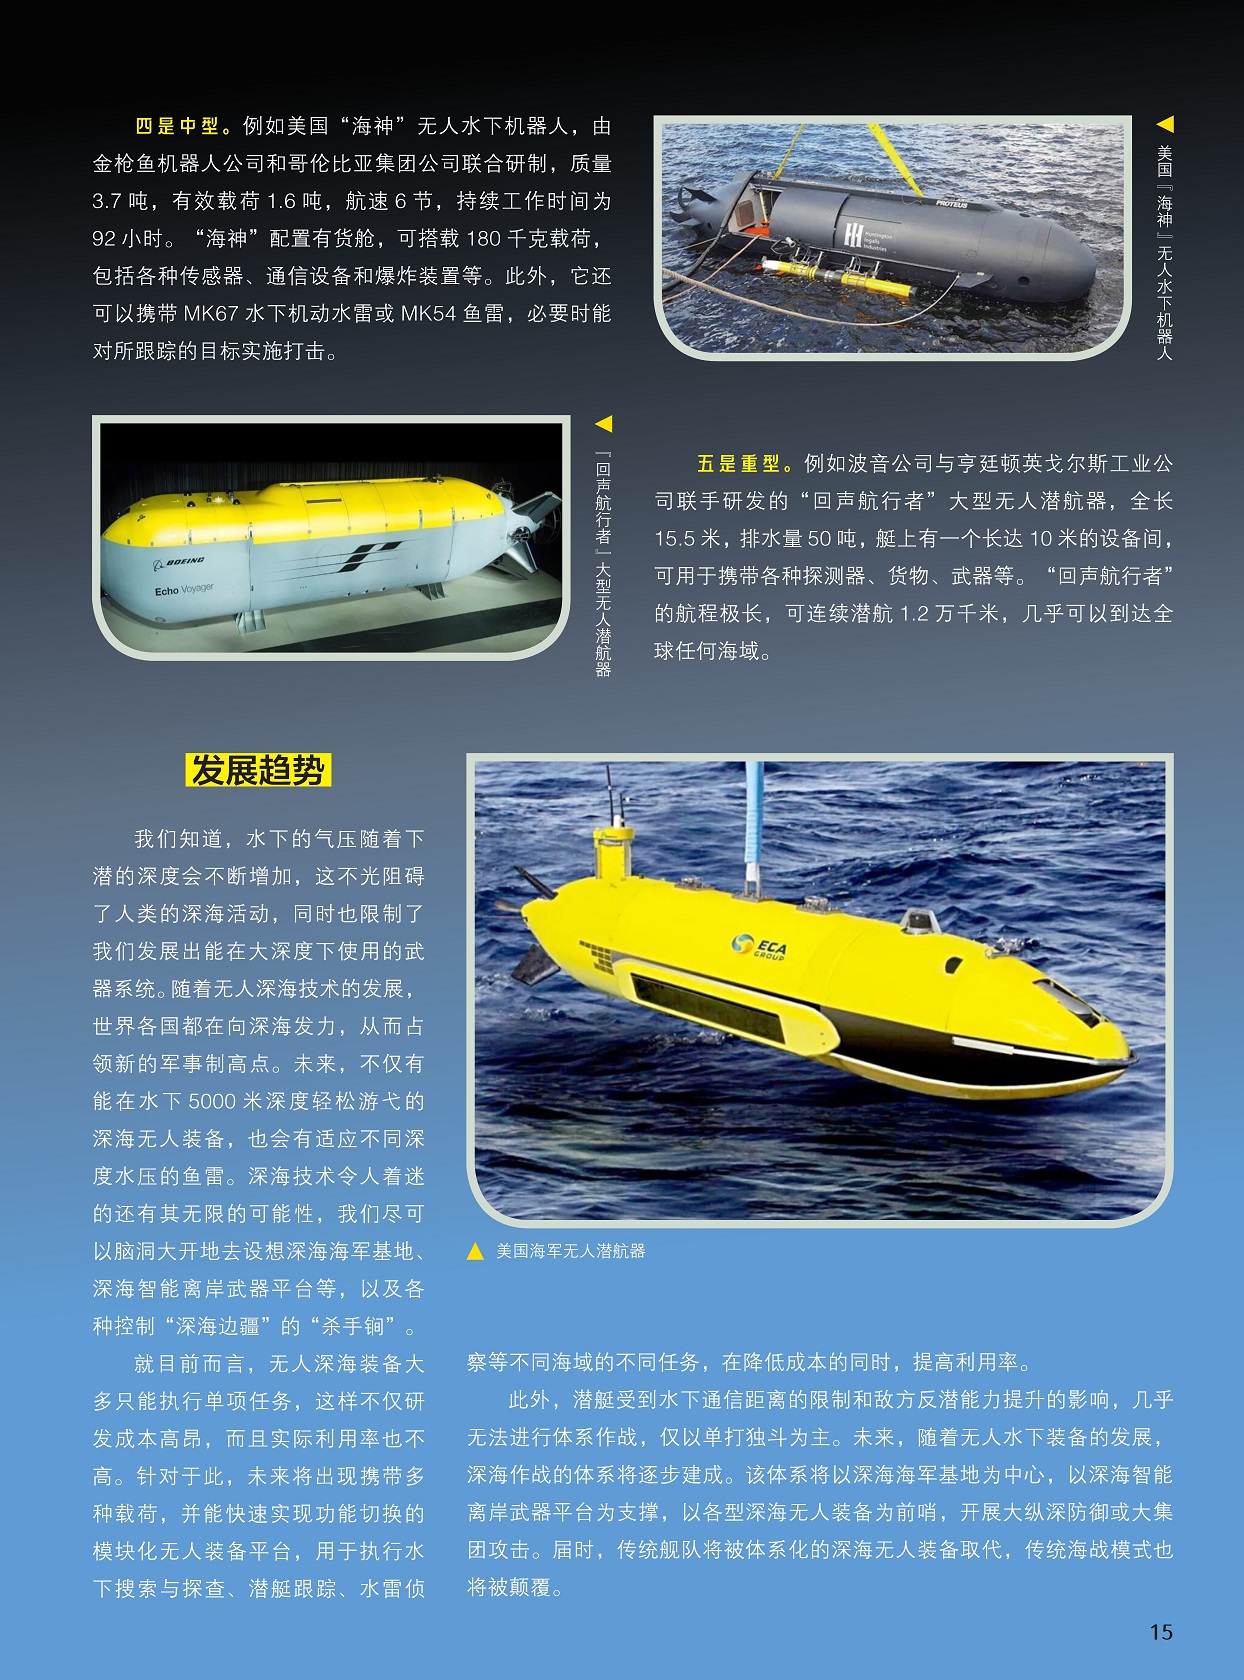 “回声航行者”大型无人潜航器,传统舰队将被体系化的深海无人装备取代